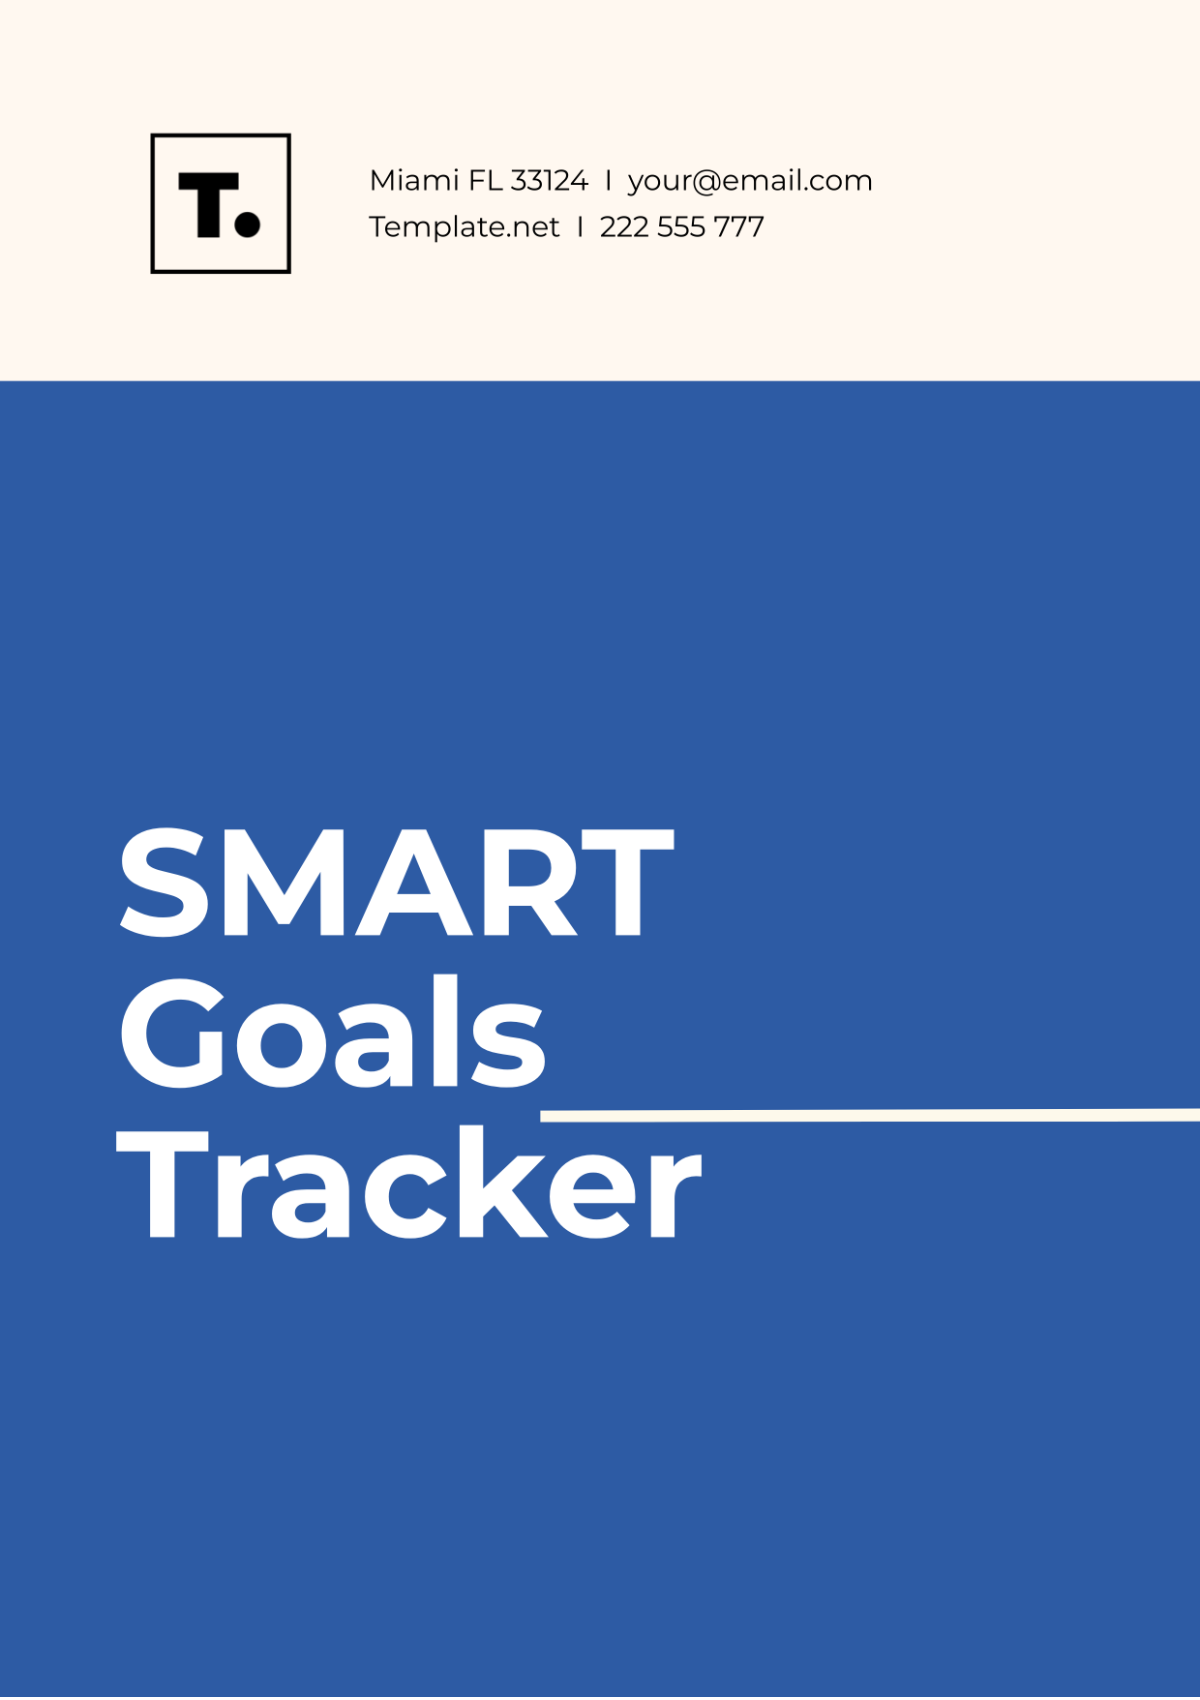 SMART Goals Tracker Template